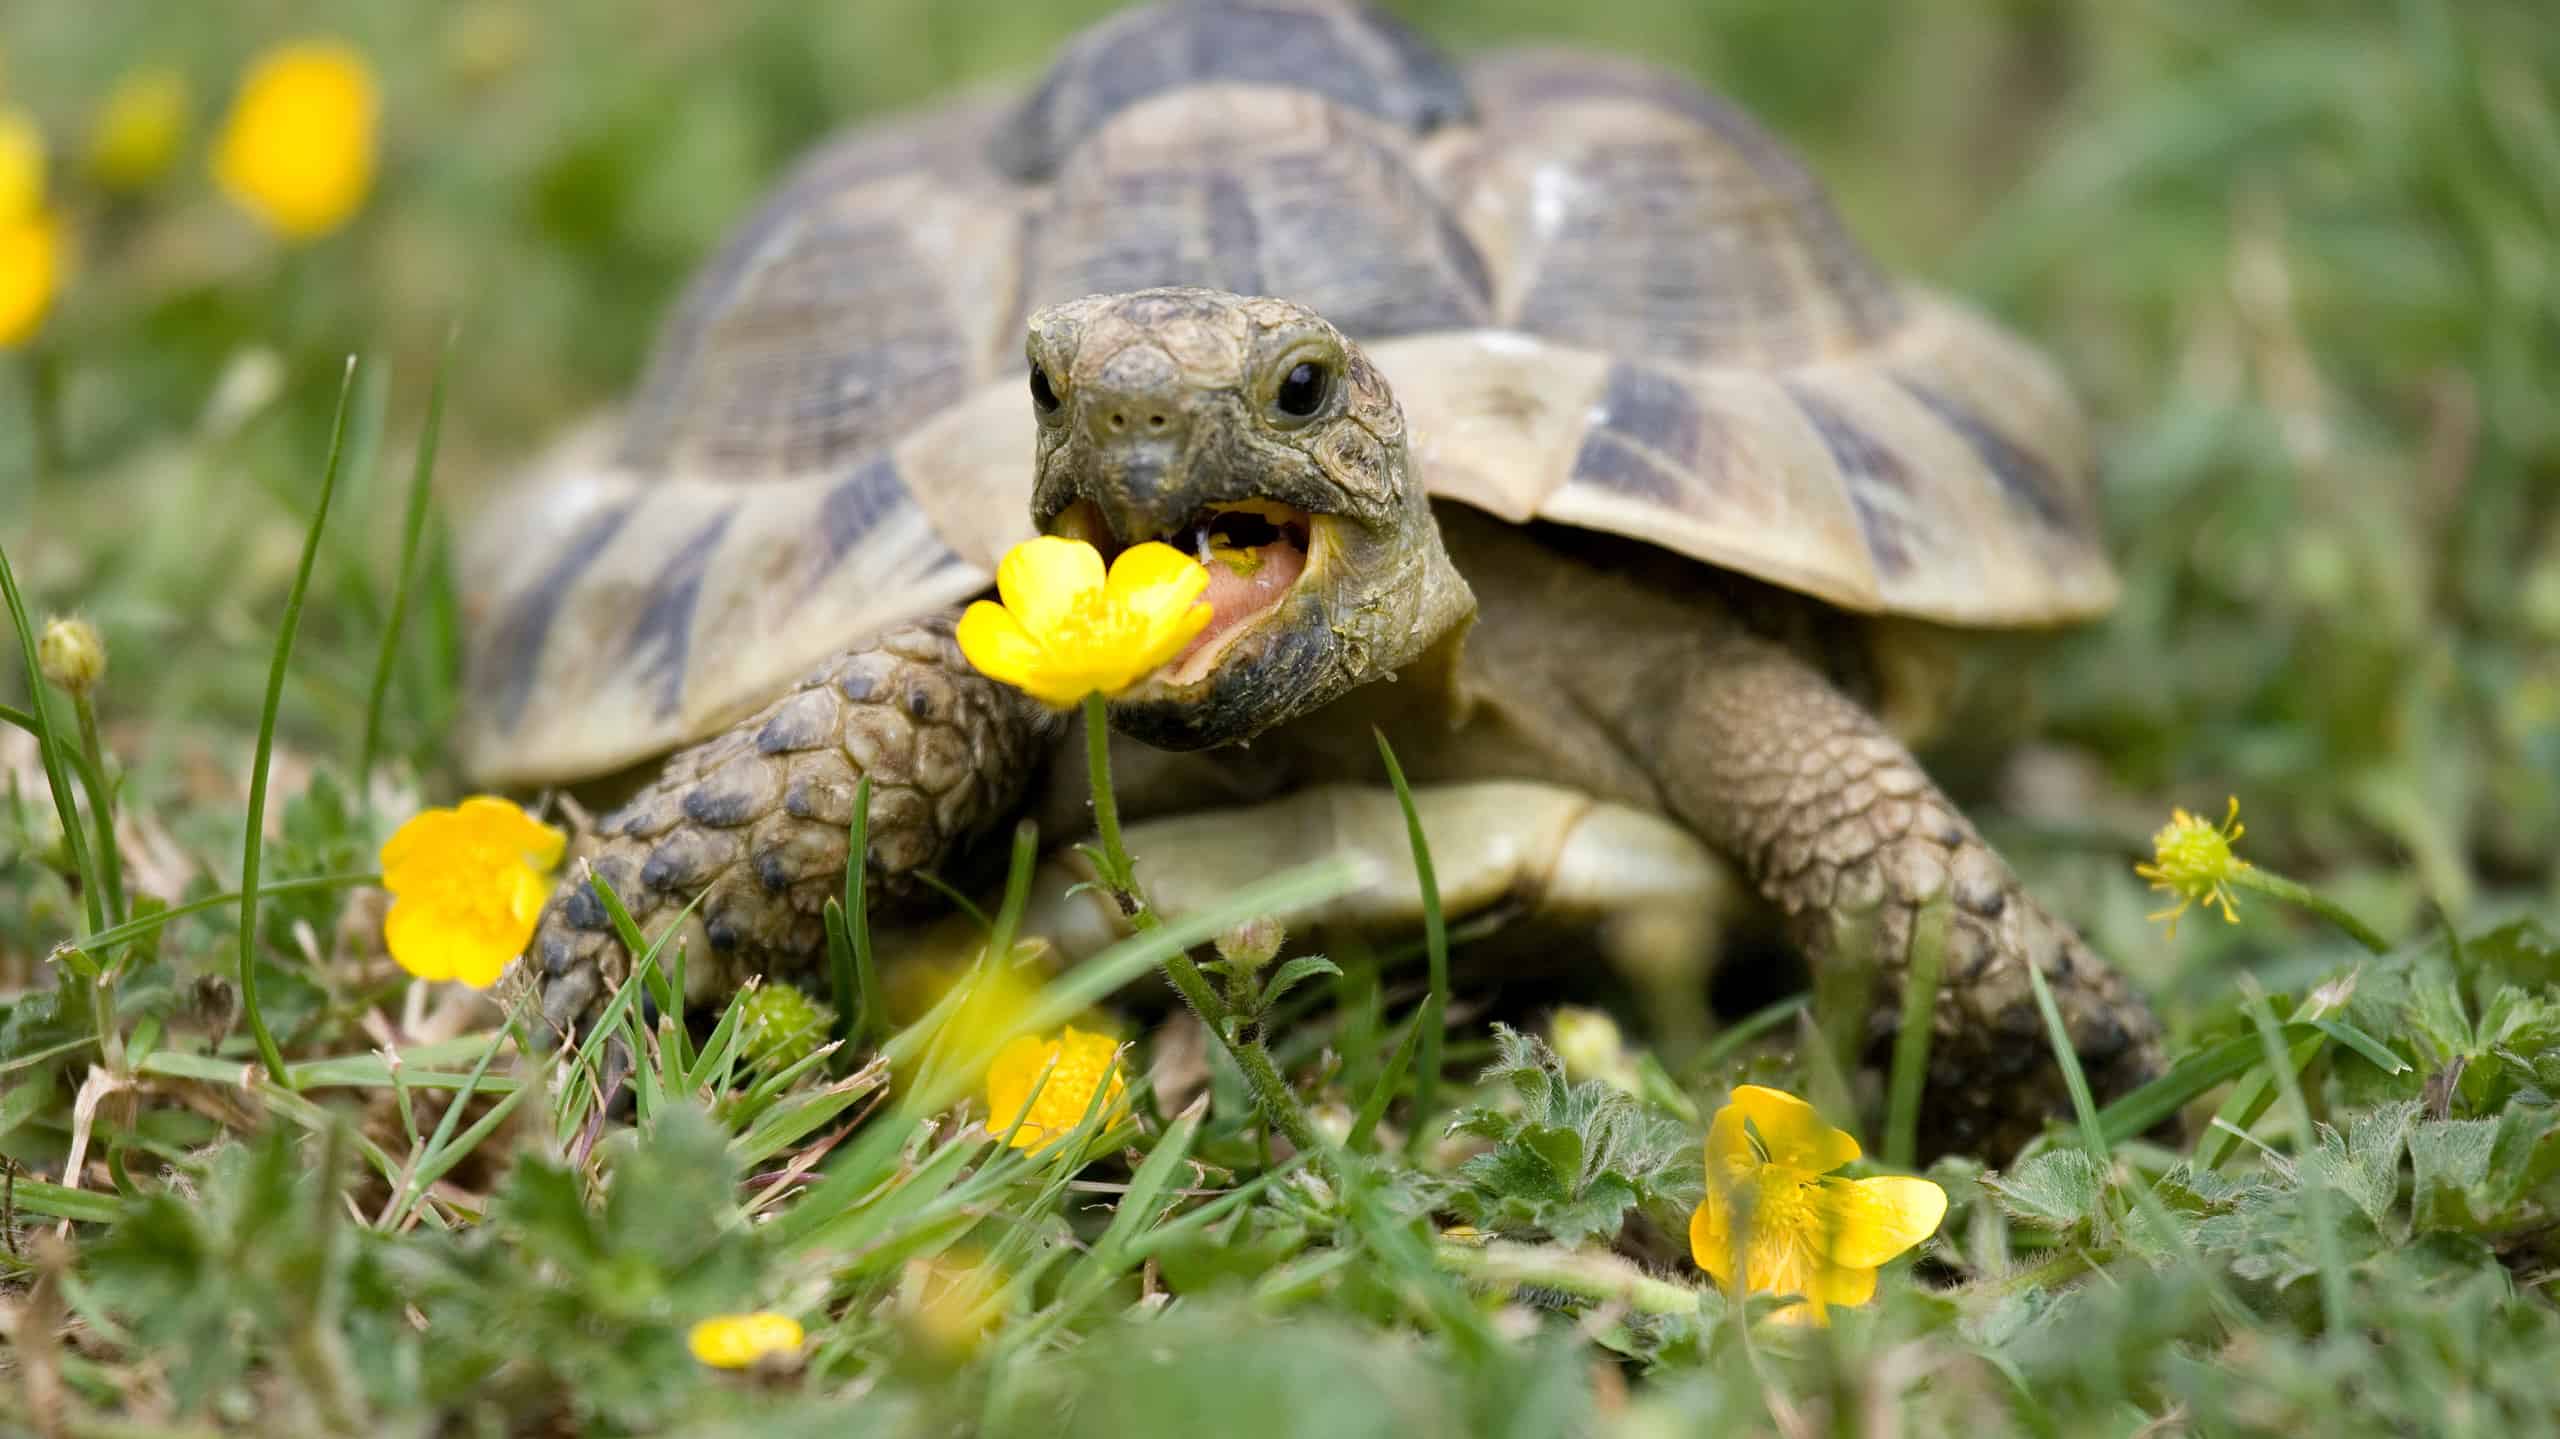 Hermann's Tortoise in Garden Eating Buttercup